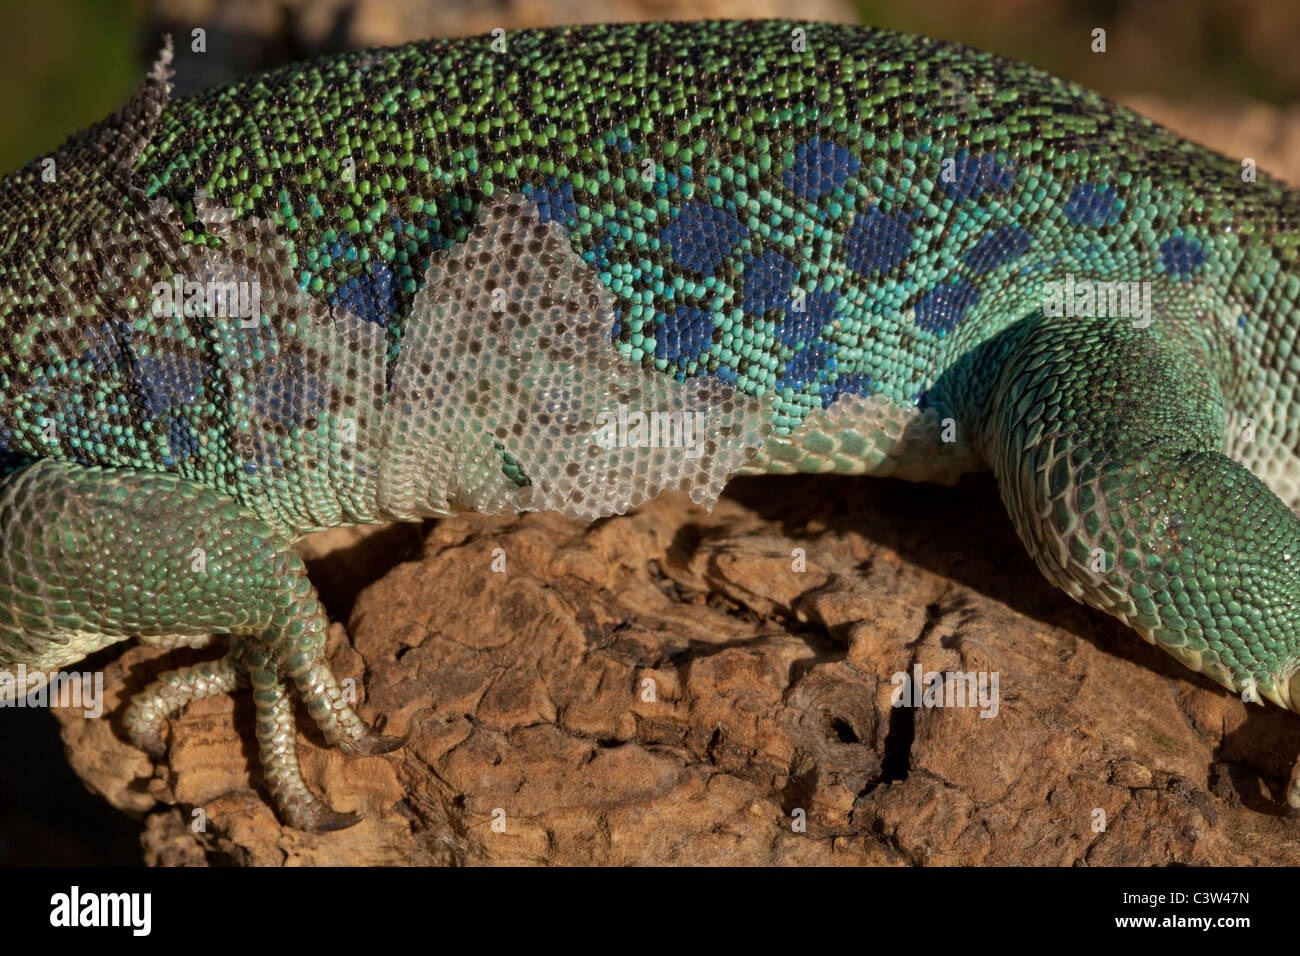 Europäischen Ocellated oder Eyed Lizard (Timon Lepidus). Häutung der Haut in Stücke auf Flanke des Körpers zeigen. Stockfoto